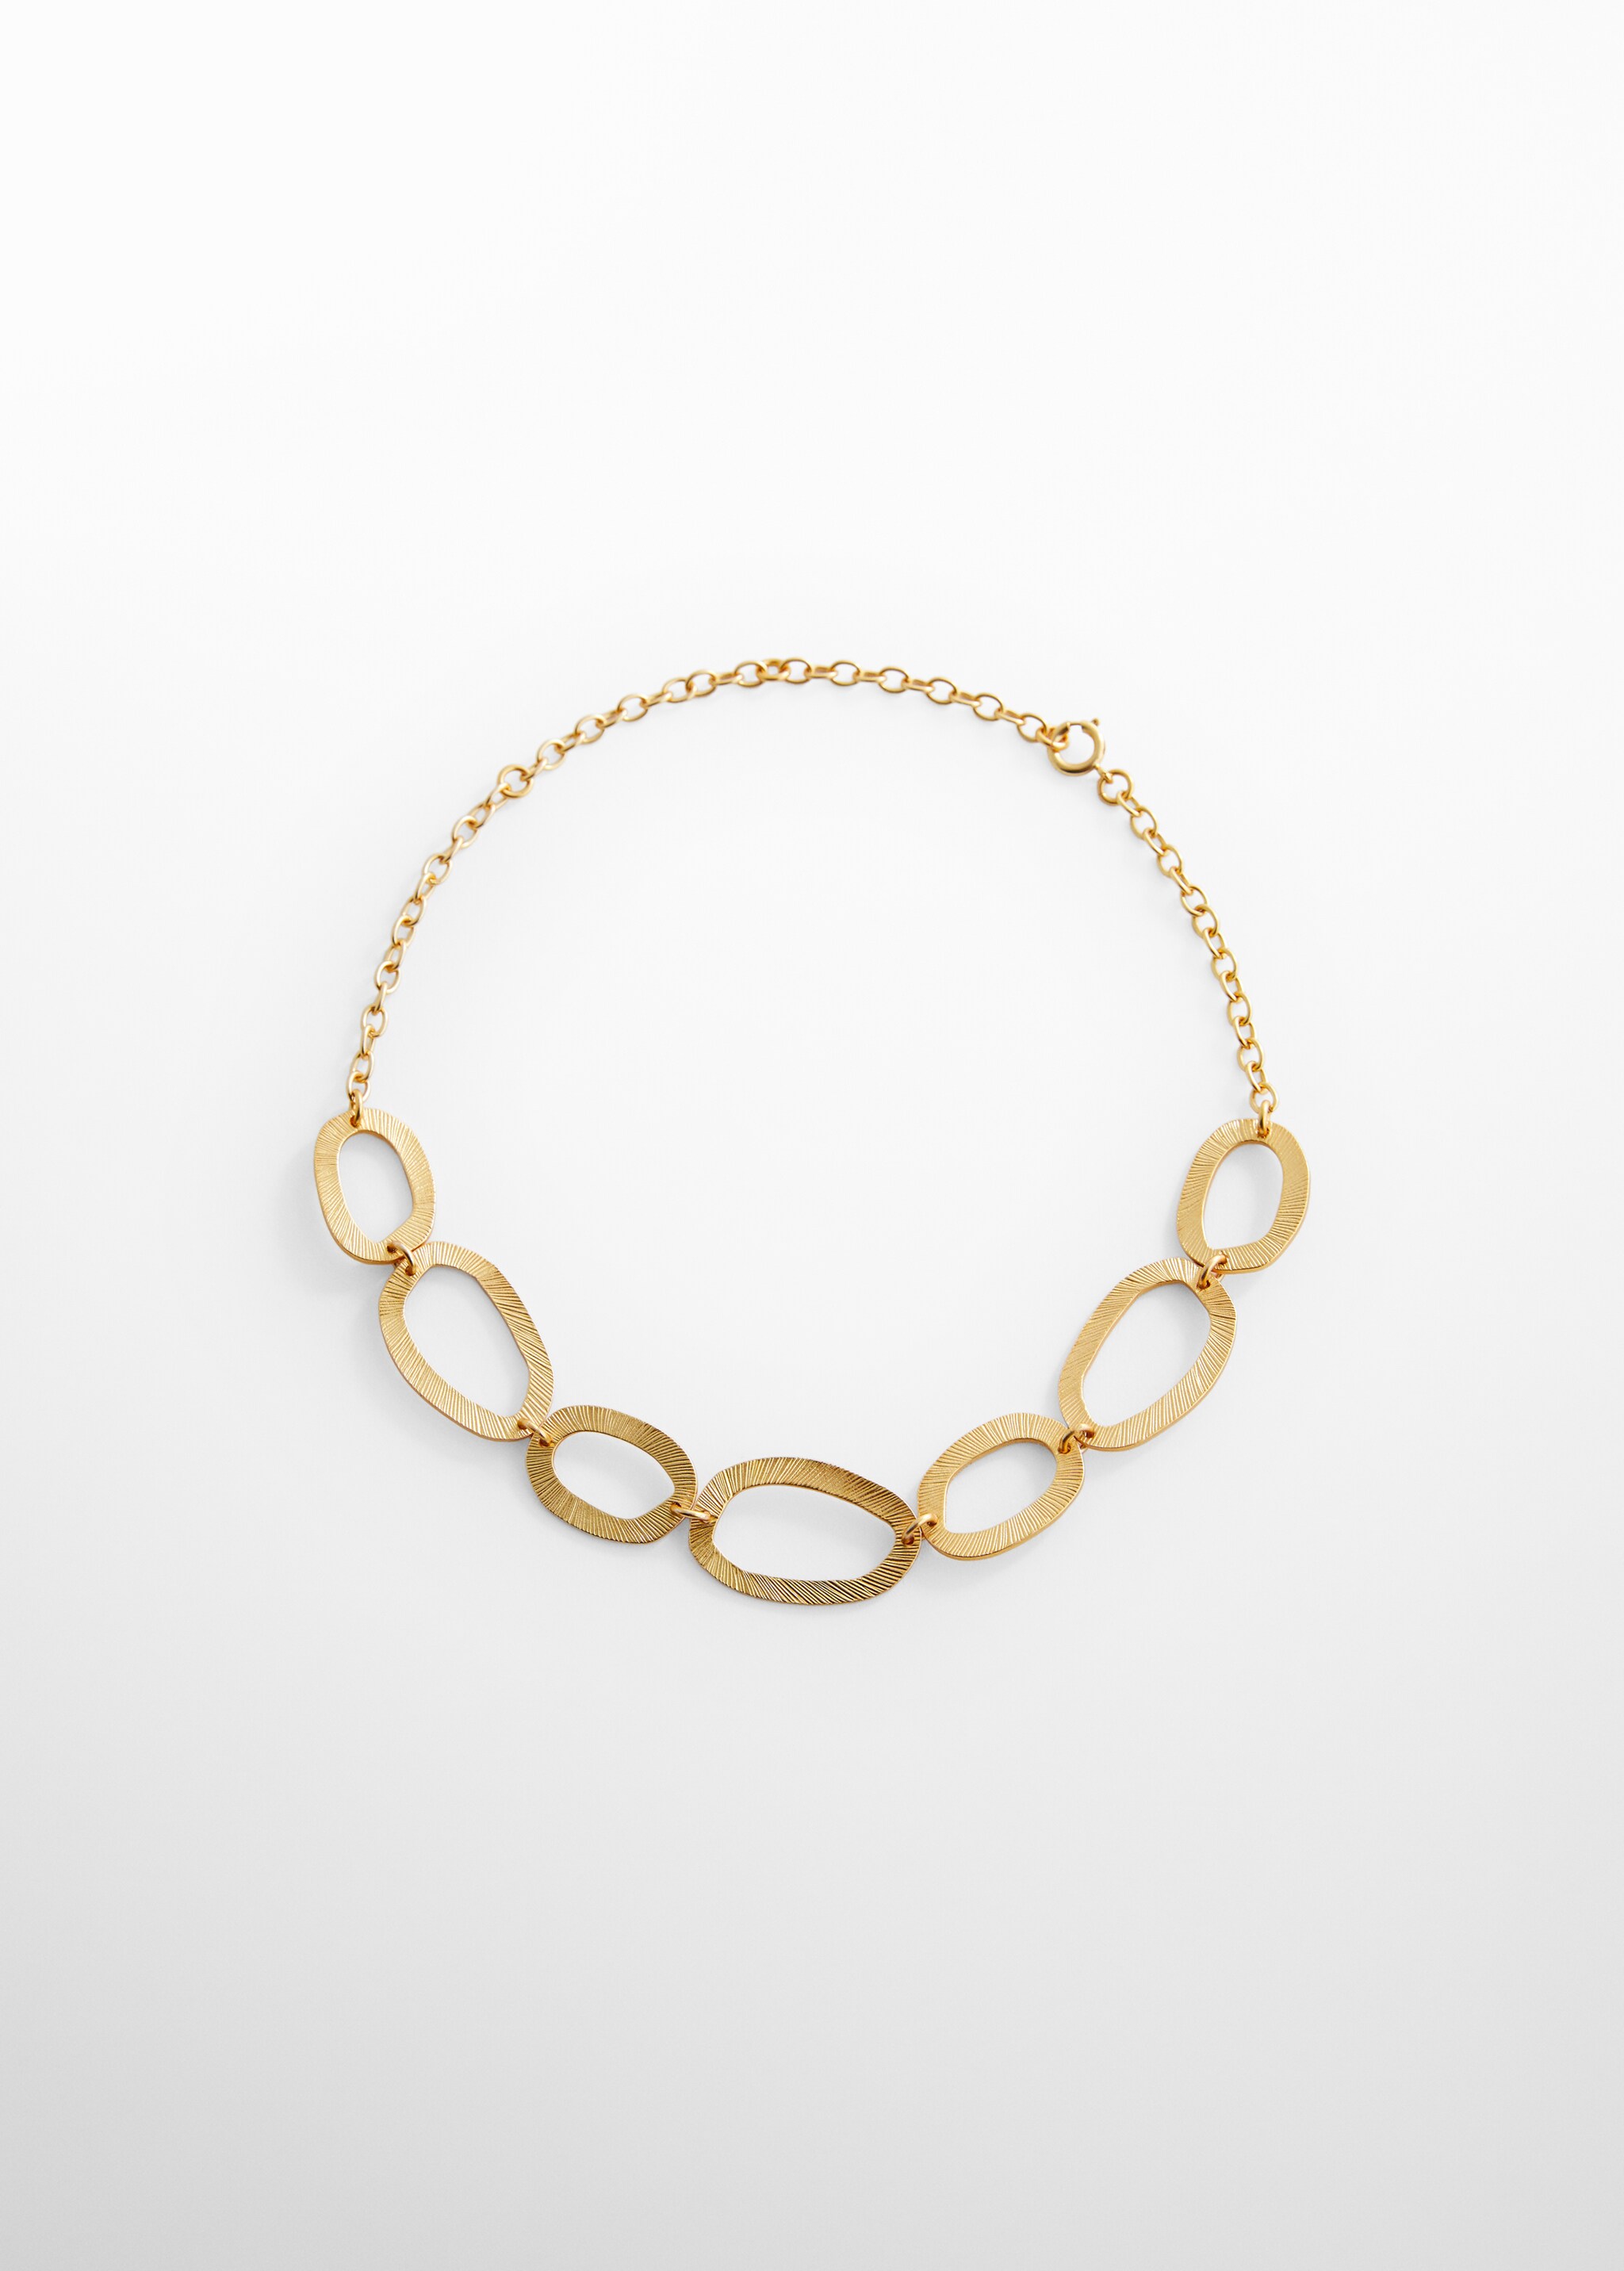 Halskette mit unregelmäßigen Ringen - Artikel ohne Model